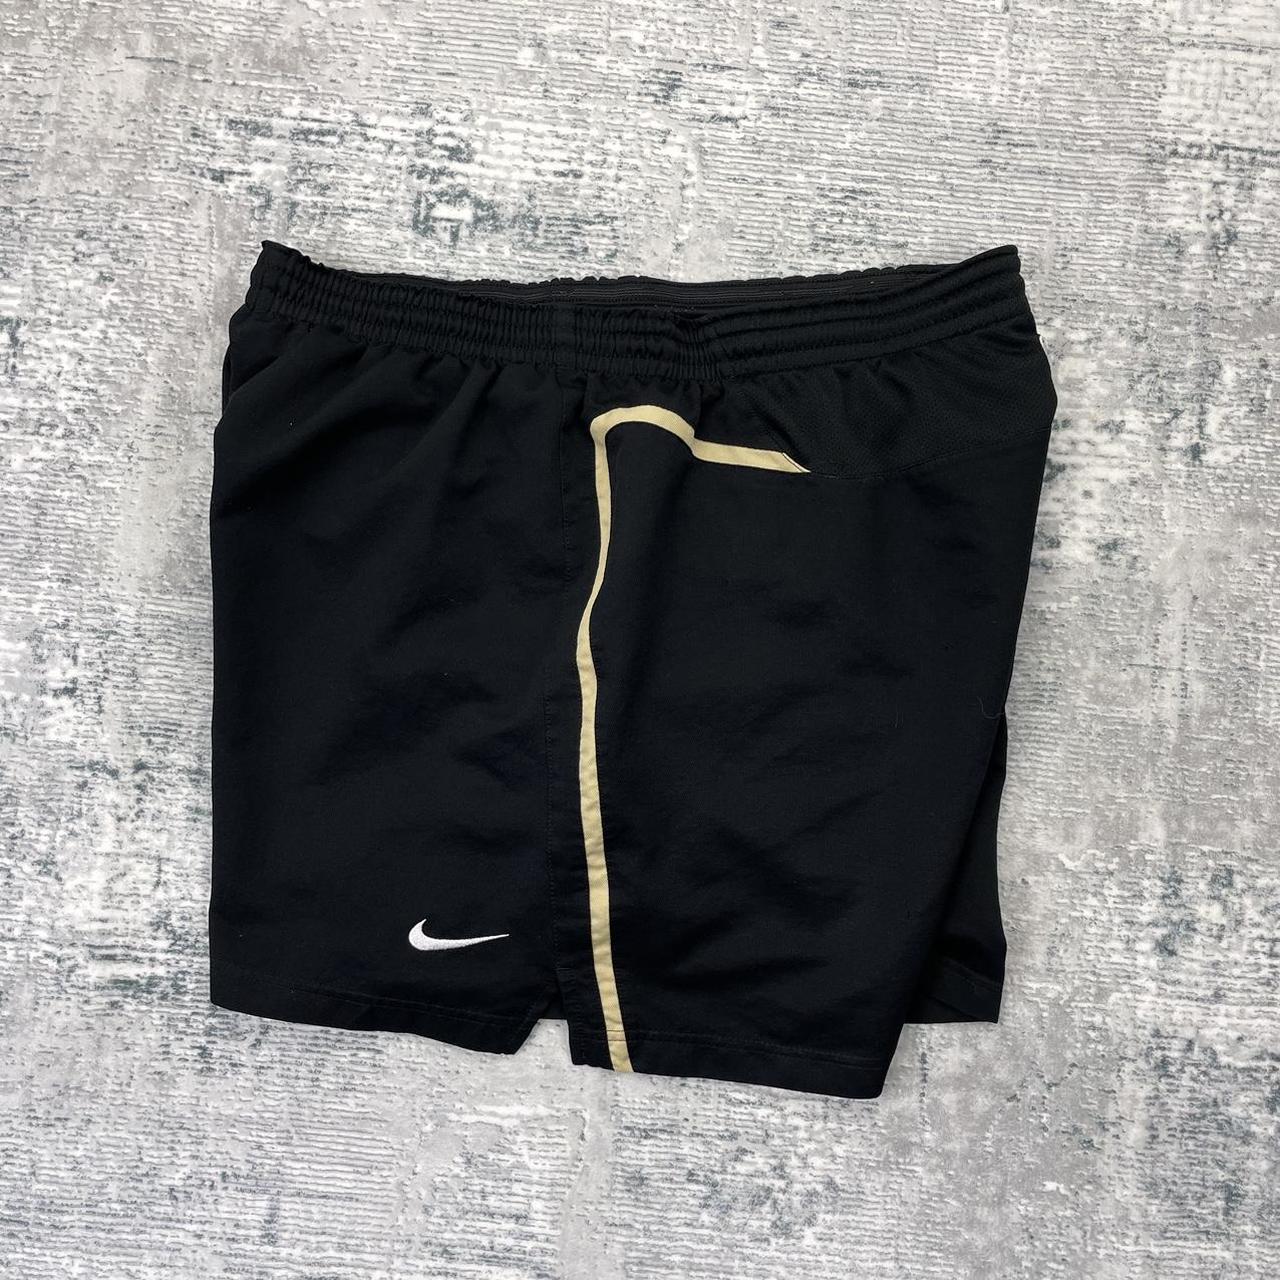 Vintage 00s Nike x Manchester United shorts - X Large